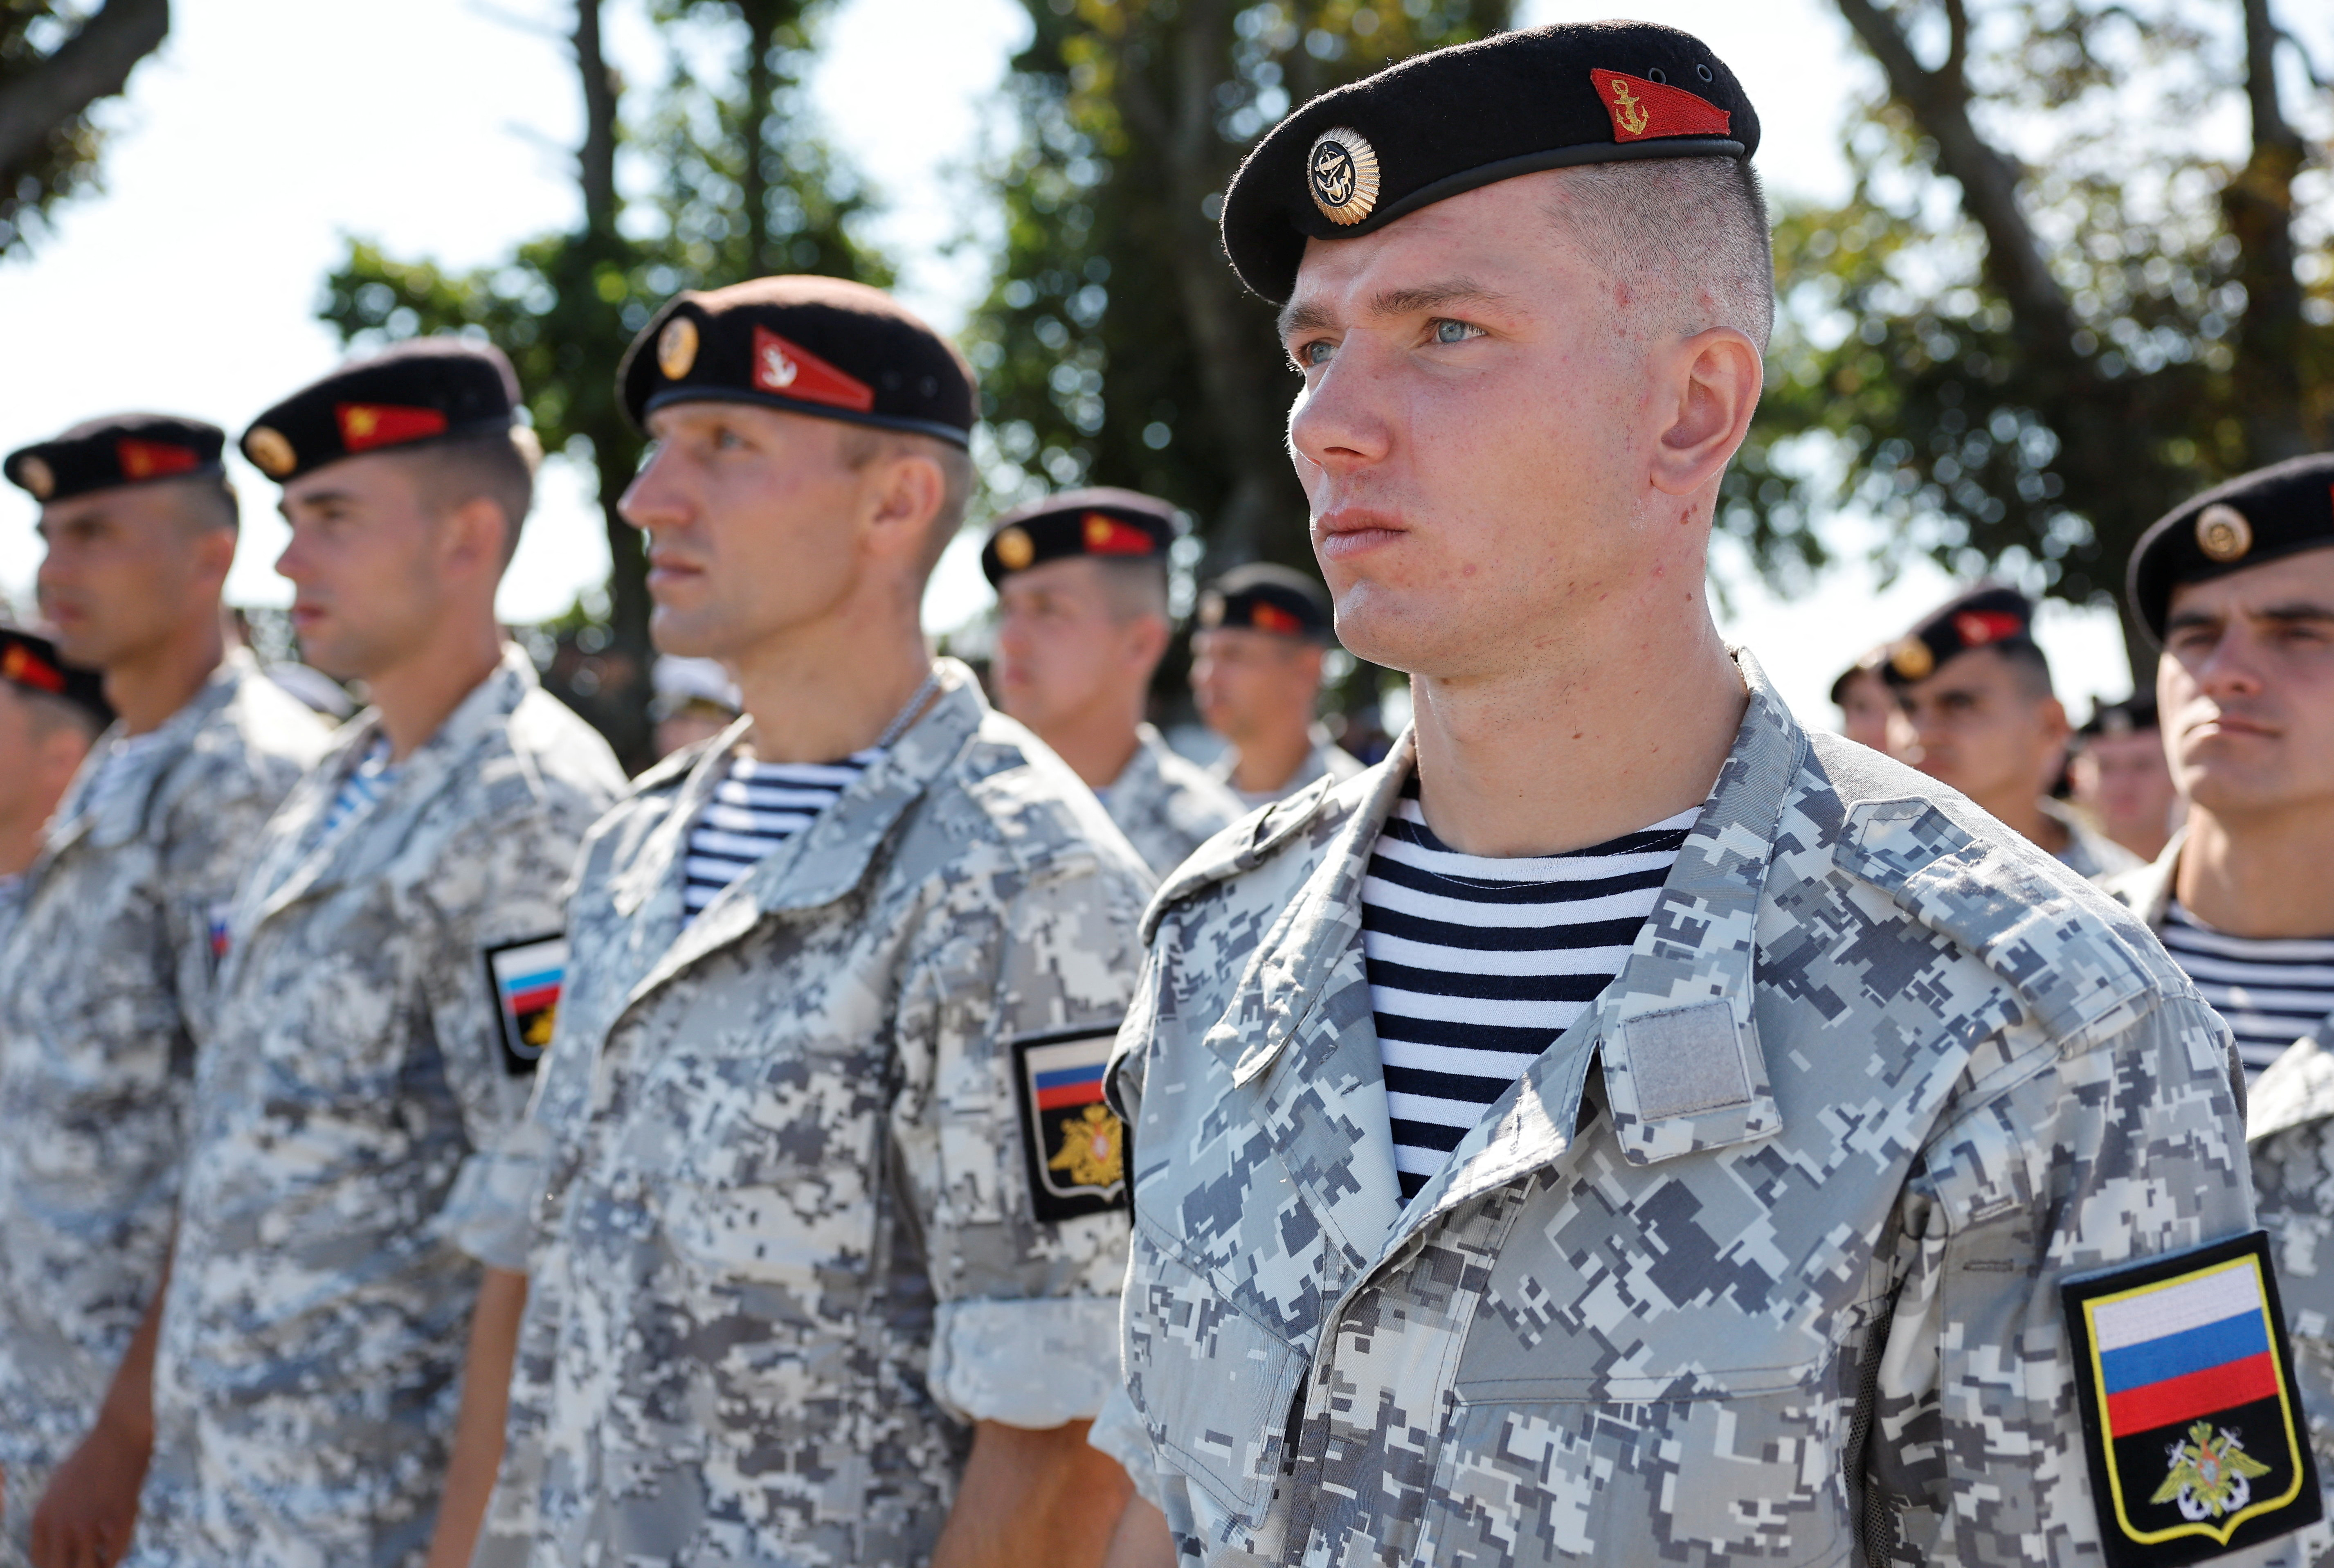 Marines de Rusia participan en la ceremonia de apertura de la competencia internacional Seaborne Assault 2022 como parte de los Juegos Internacionales del Ejército, en el campo de tiro de Khmelevka en la región de Kaliningrado, Rusia, 13 de agosto de 2022. (REUTERS/Vitaly Nevar)